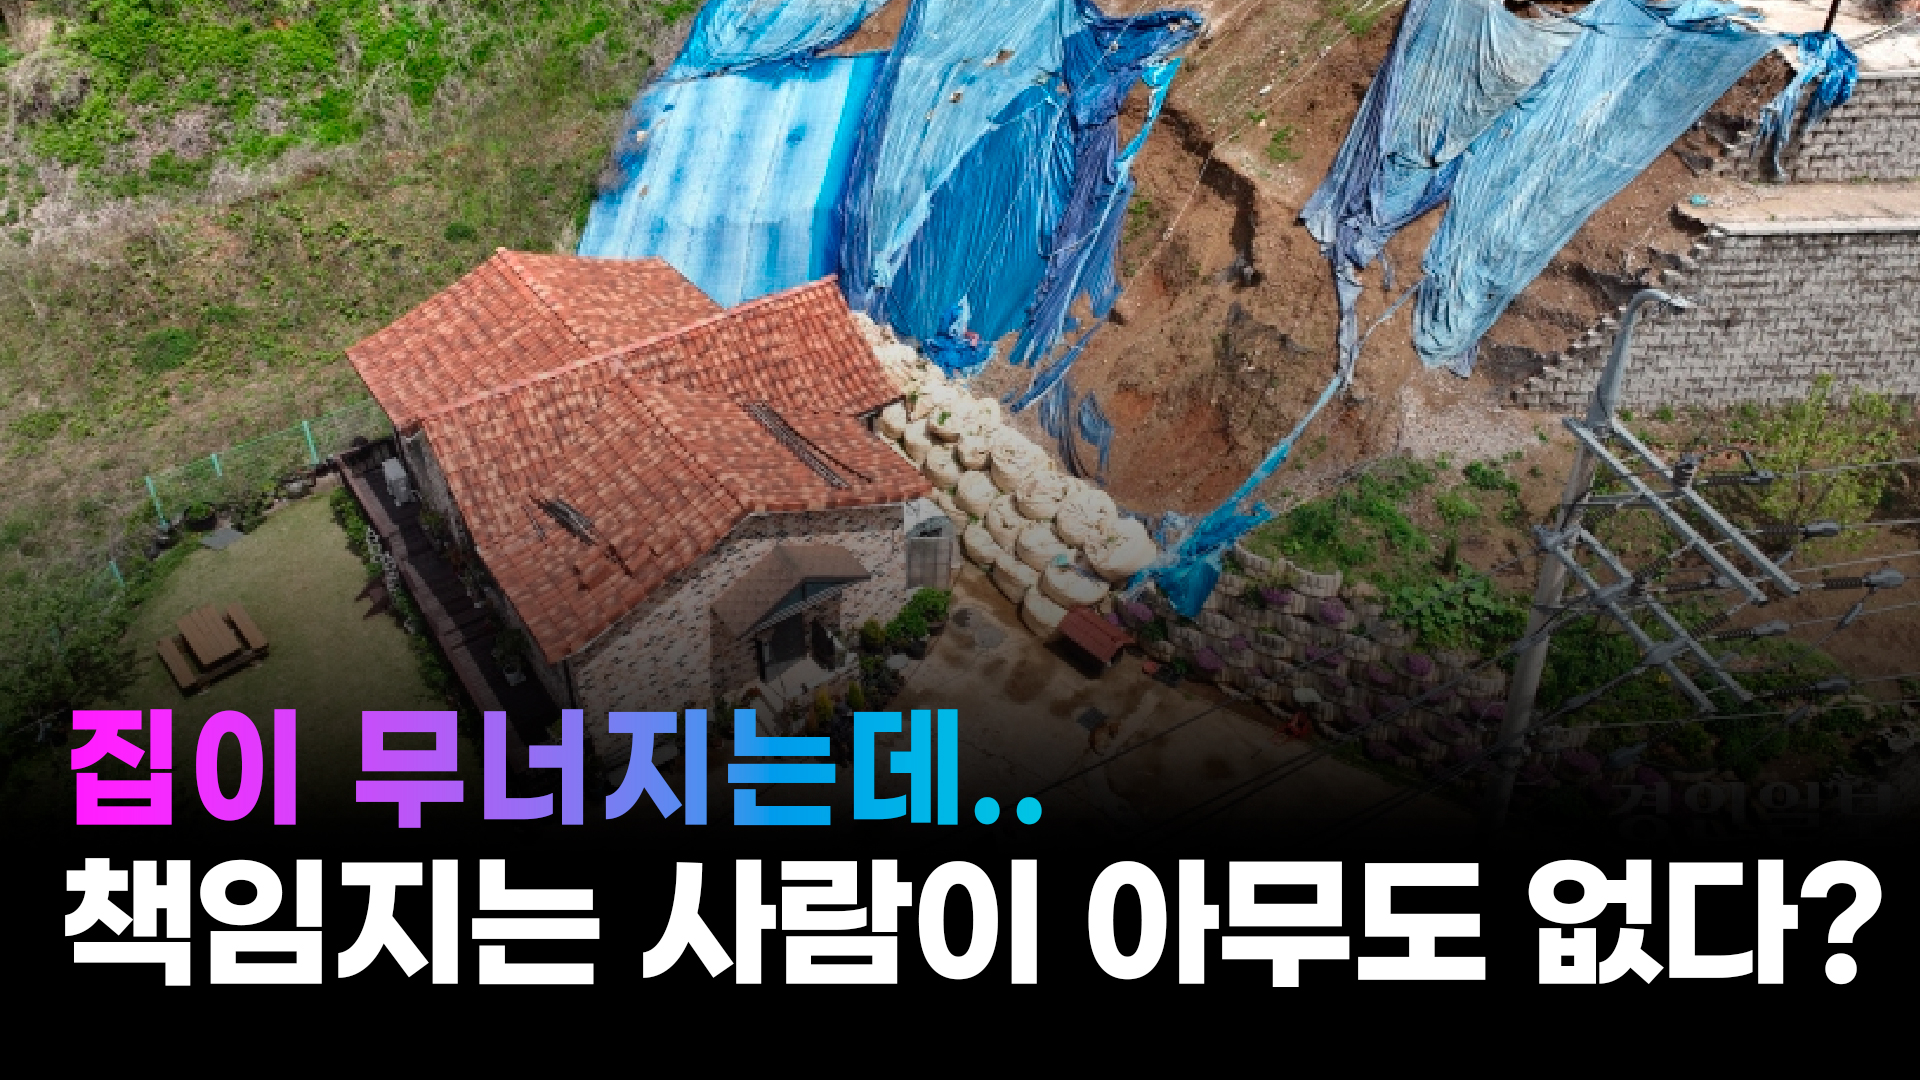 [영상+] 무너져 주택 덮친 옹벽 '2년째 방치', 처음부터 부실 정황… 